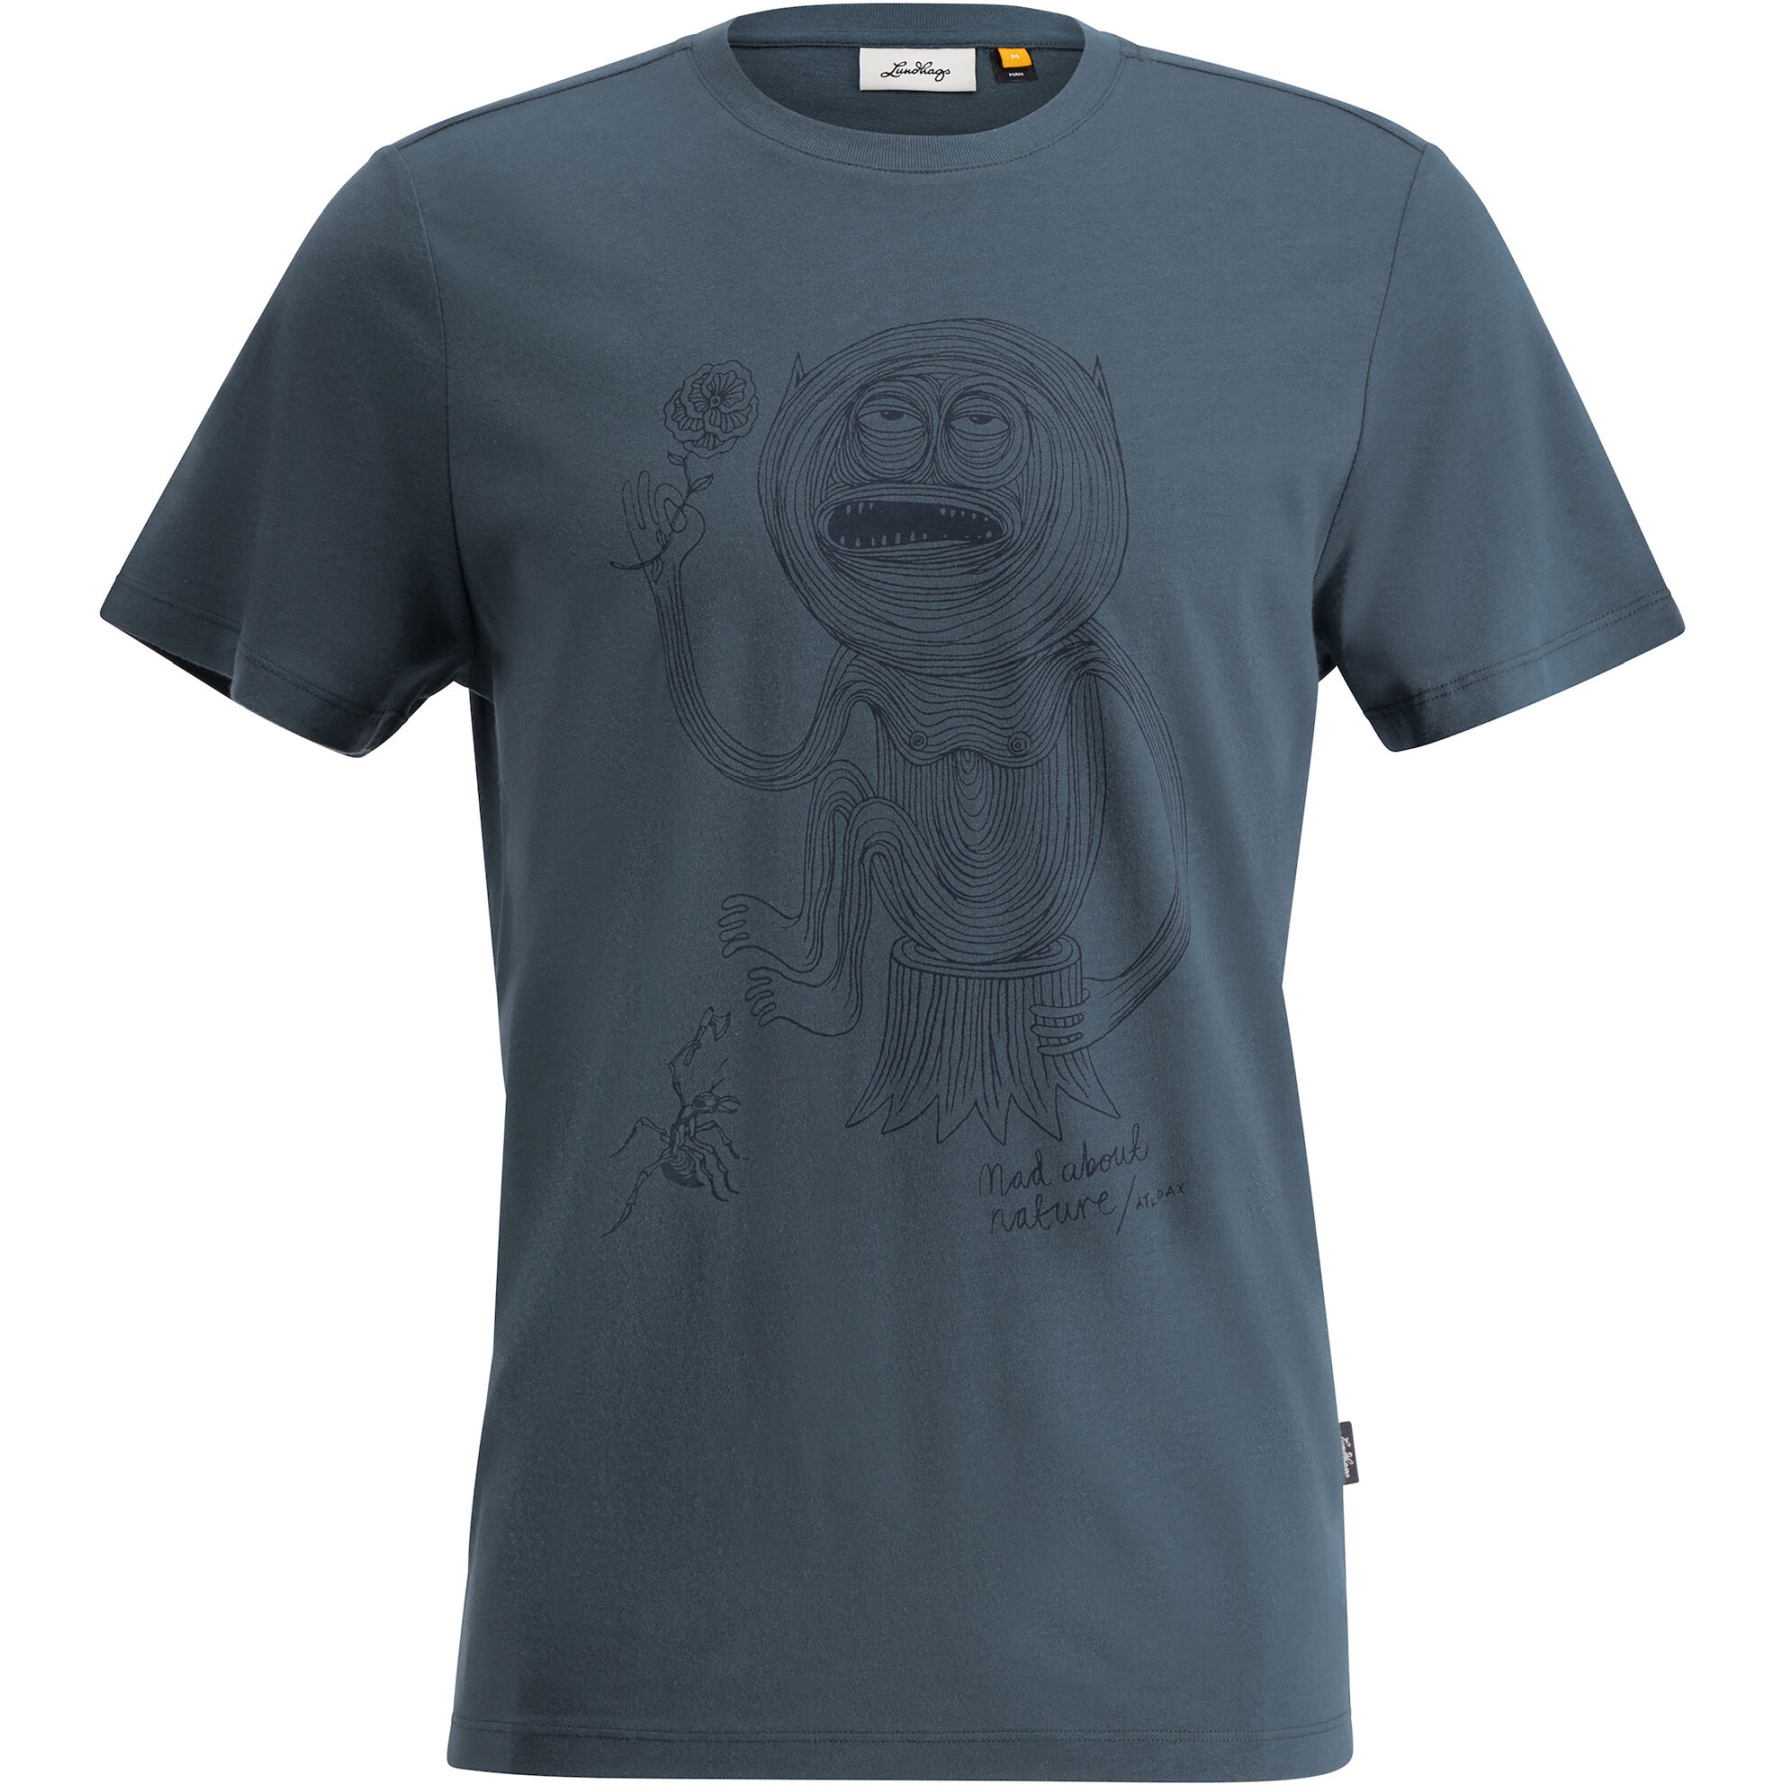 Produktbild von Lundhags Järpen Printed T-Shirt Herren - Denim Blue 76400